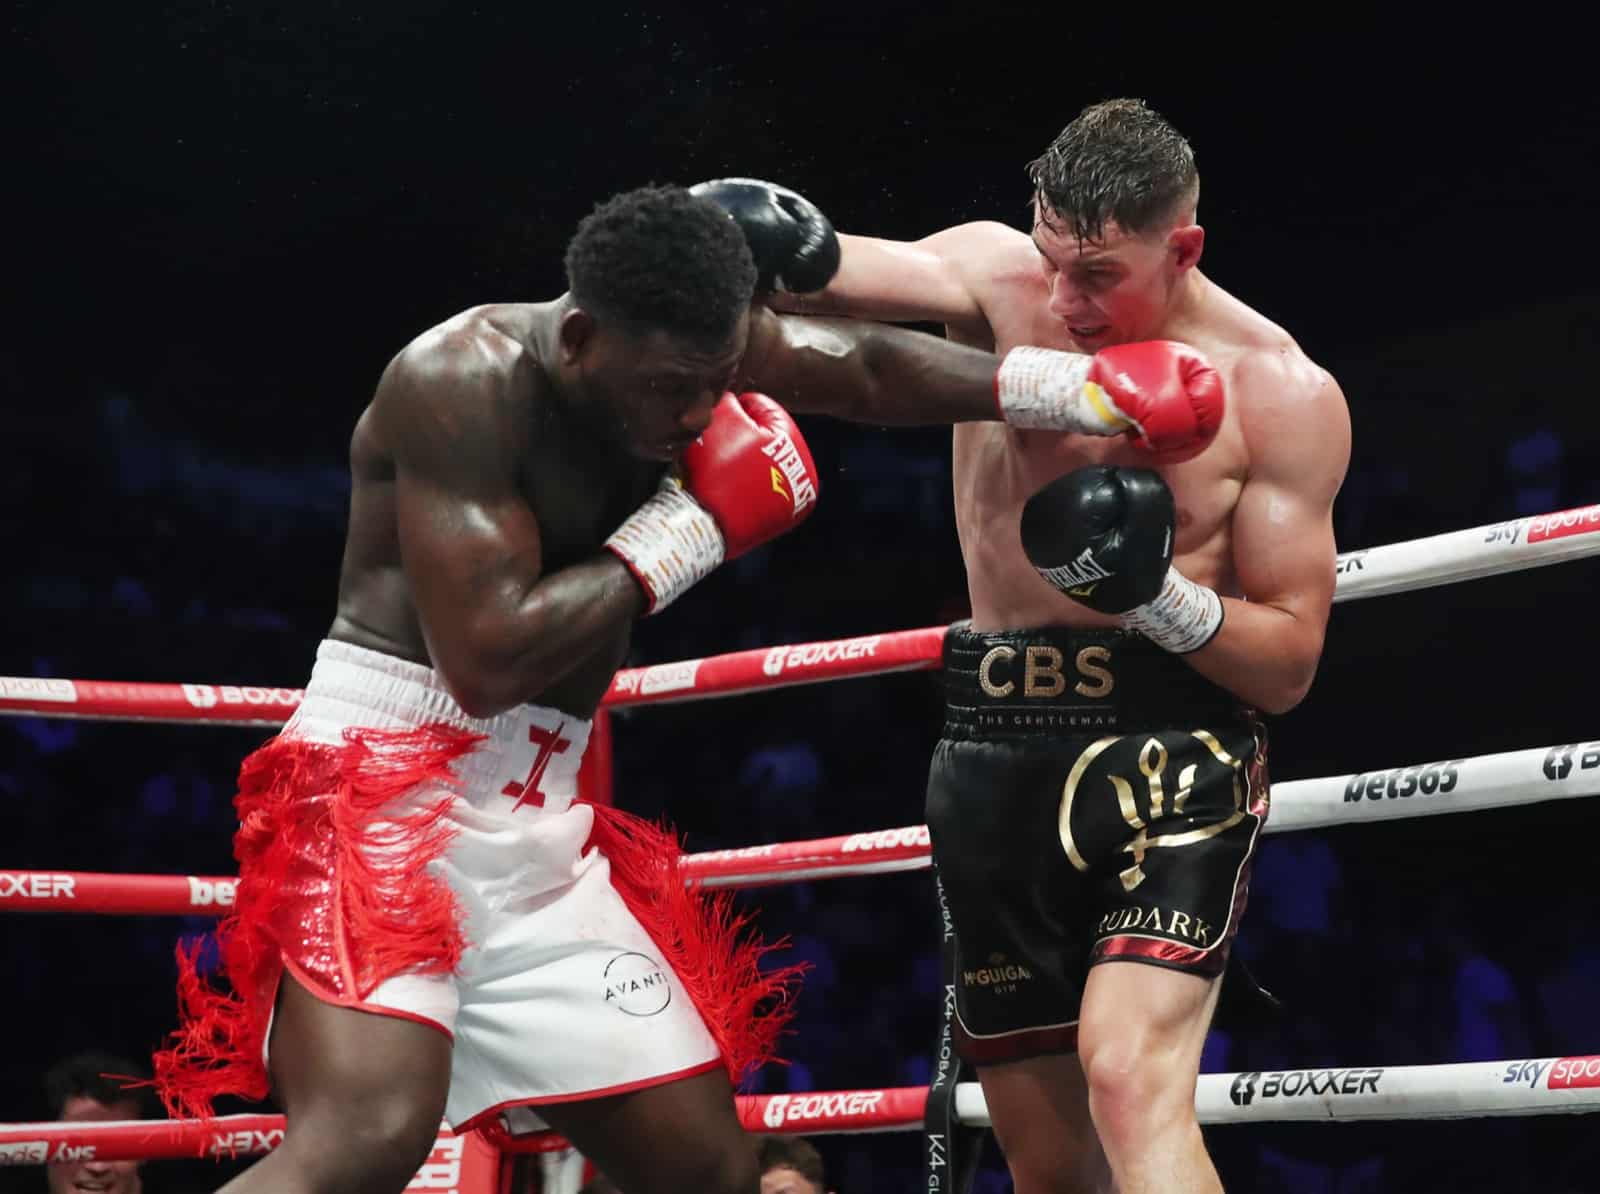 British Boxing boxing image / photo